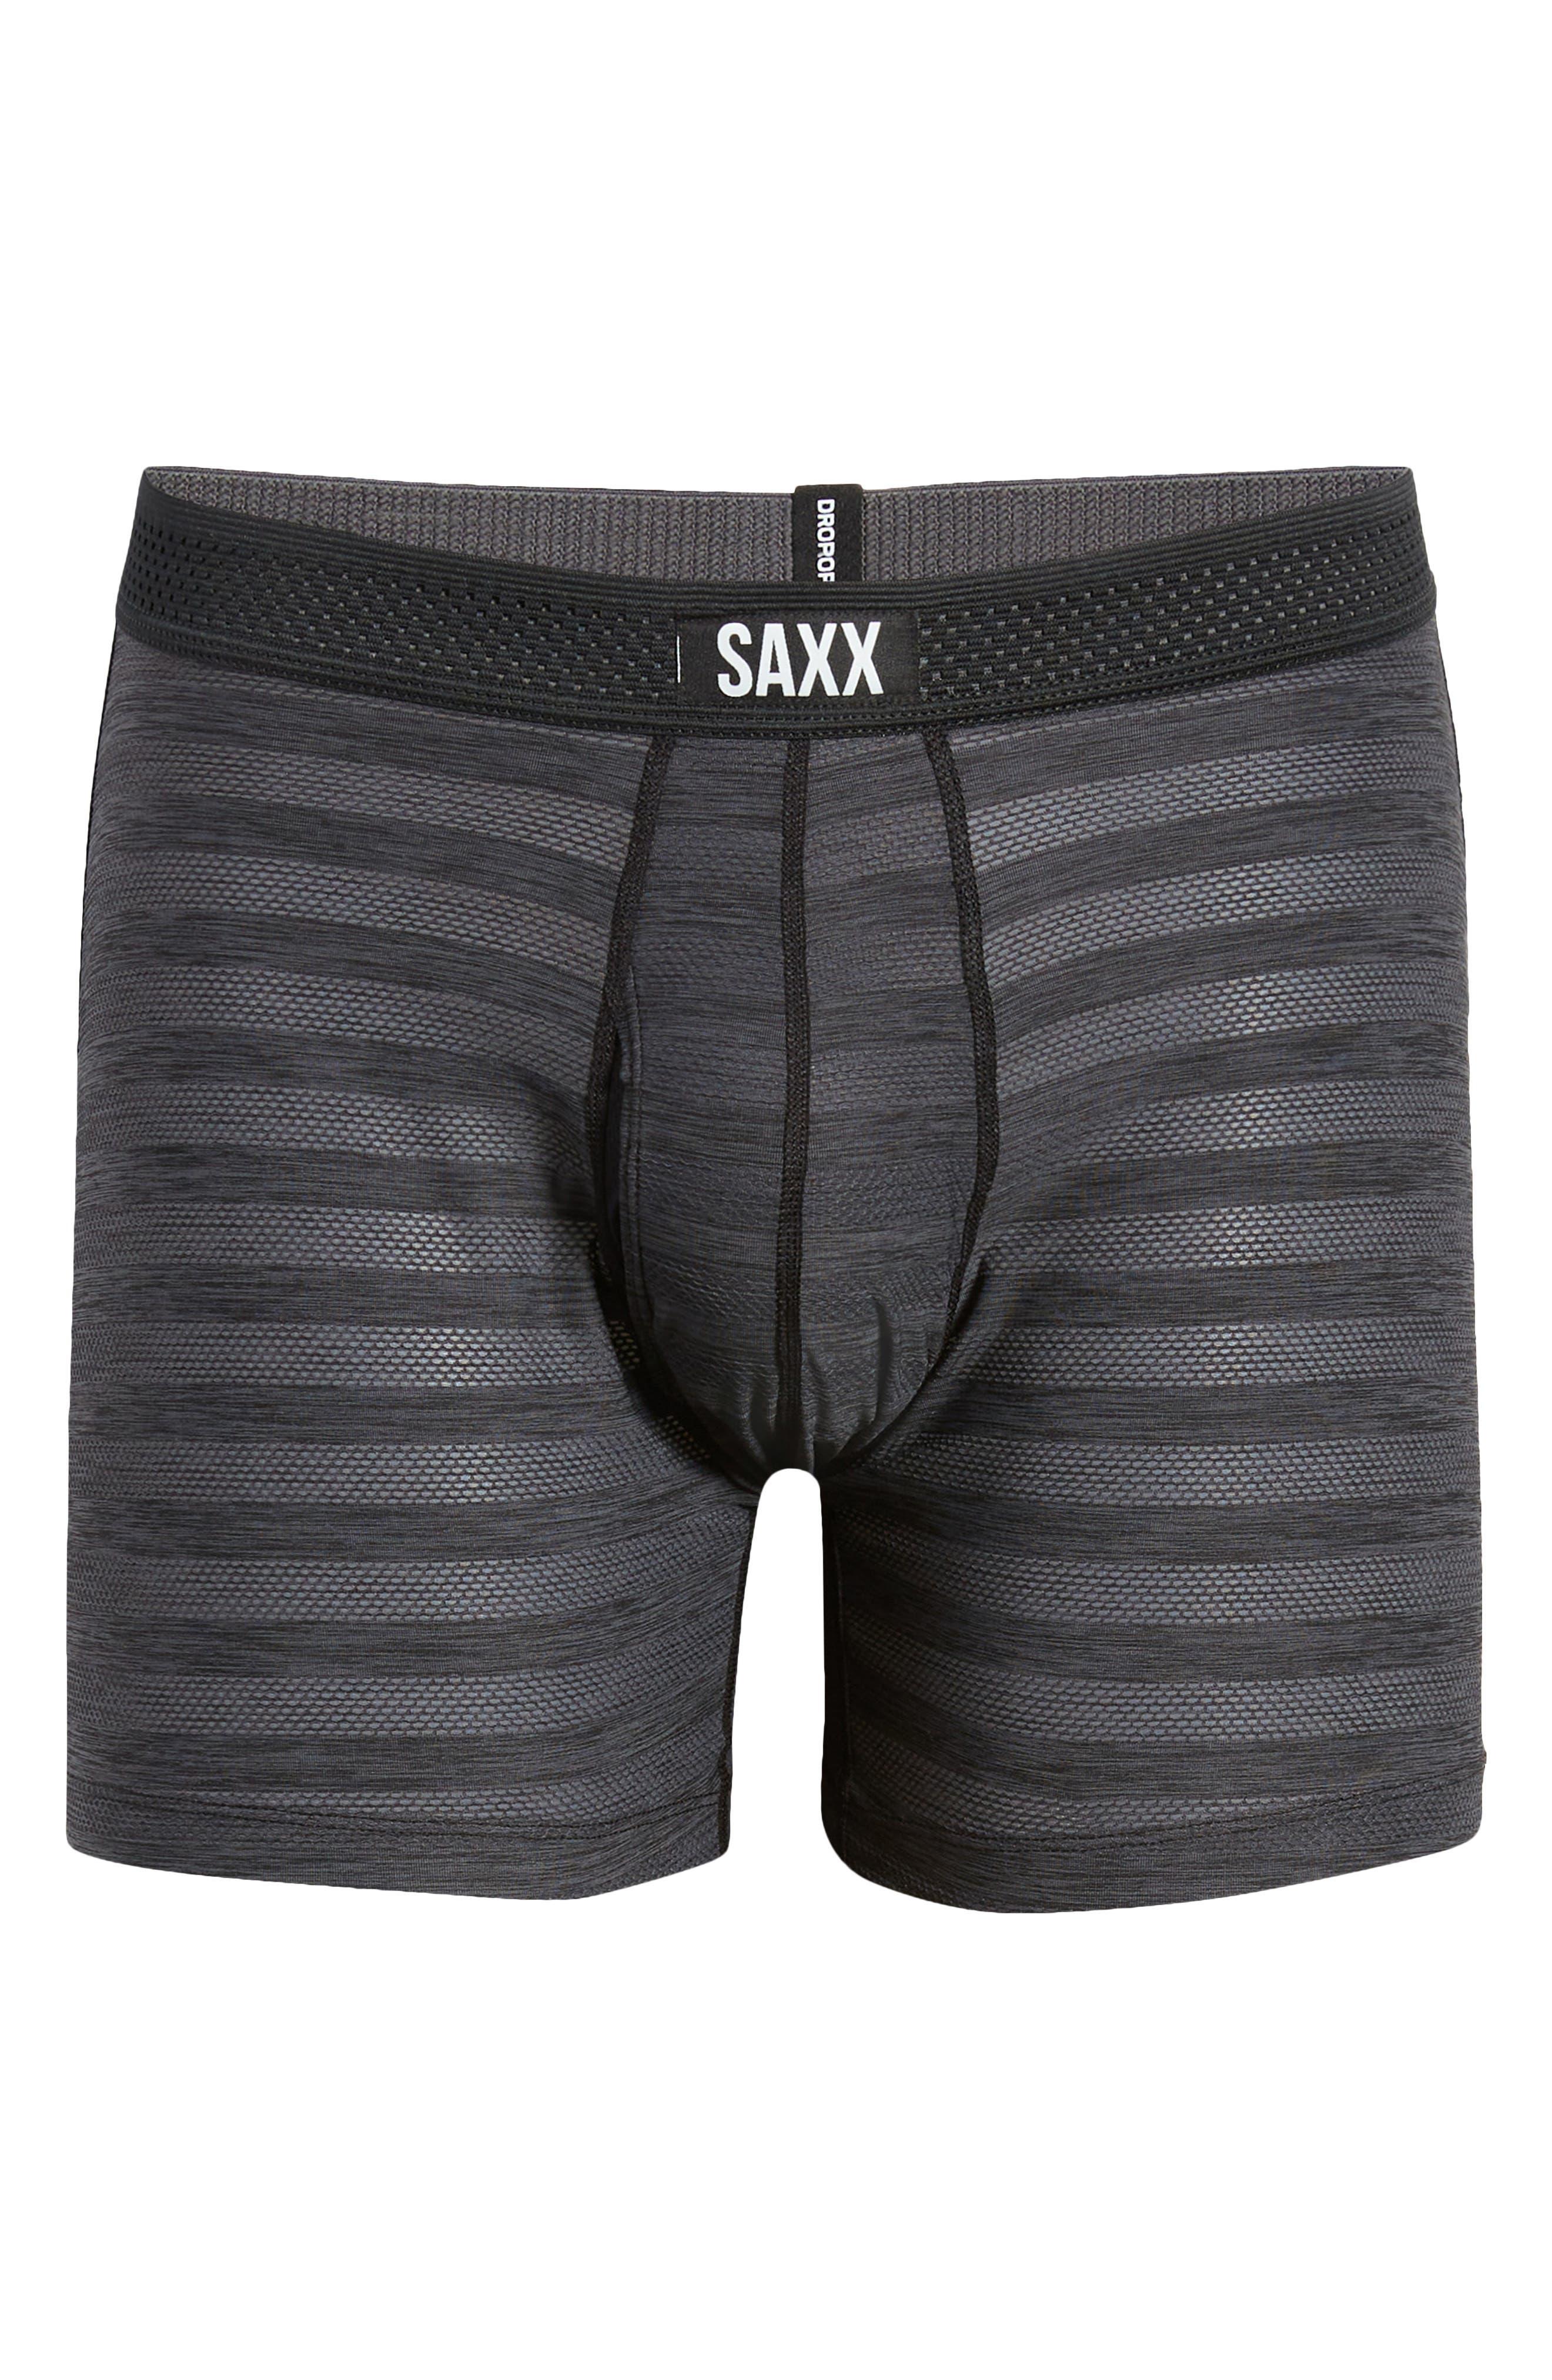 Saxx Underwear Co. Hot Shot Stripe Performance Boxer Briefs in